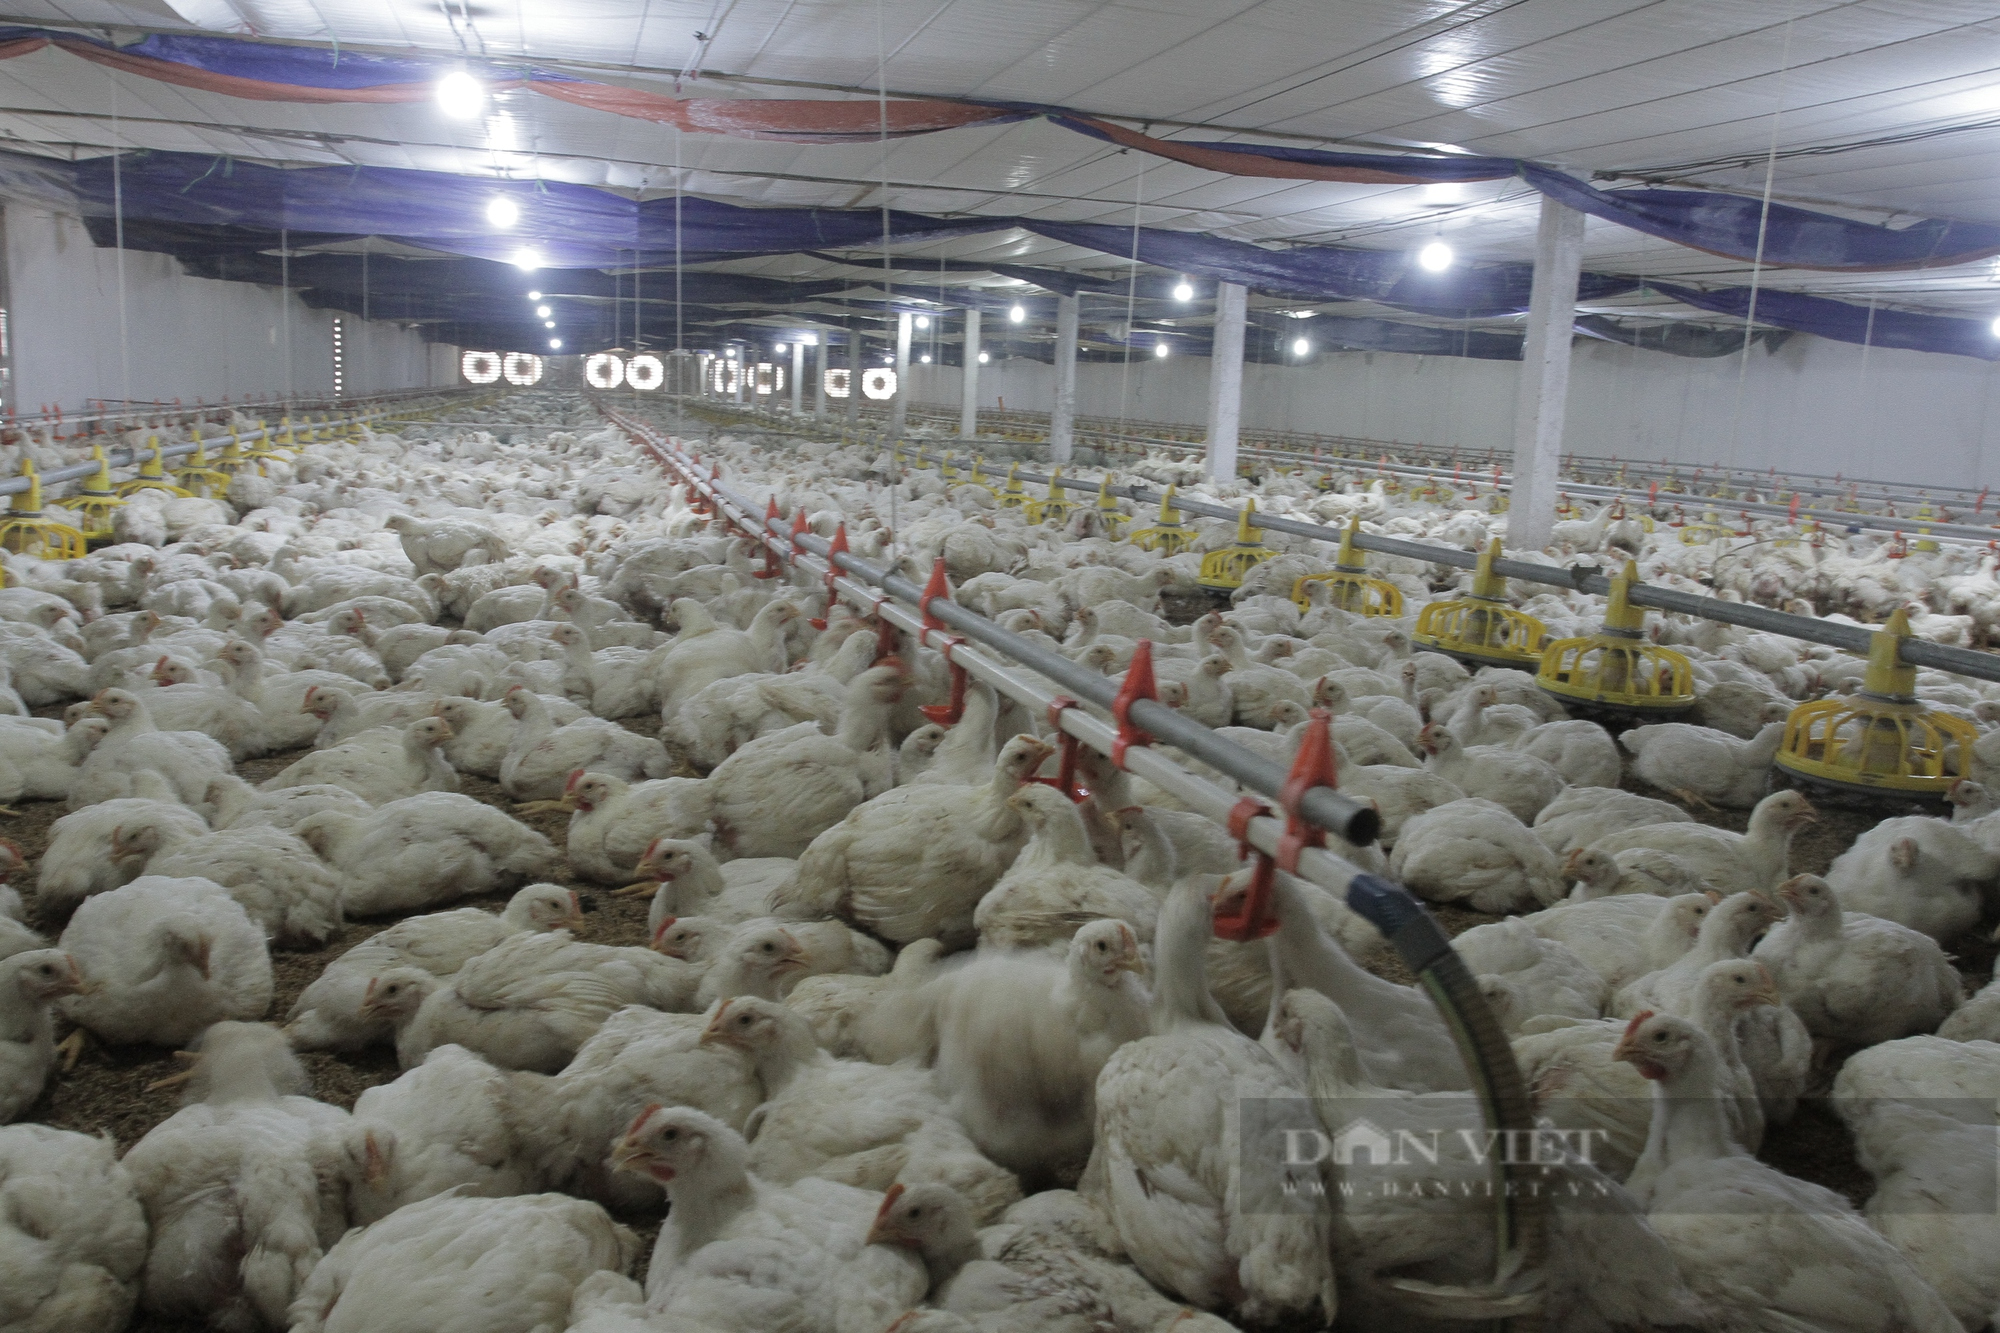 Hiện nay, gia đình anh Tùng đang nuôi khoảng 10.000 con gà trắng. (Ảnh: Hà Thanh)